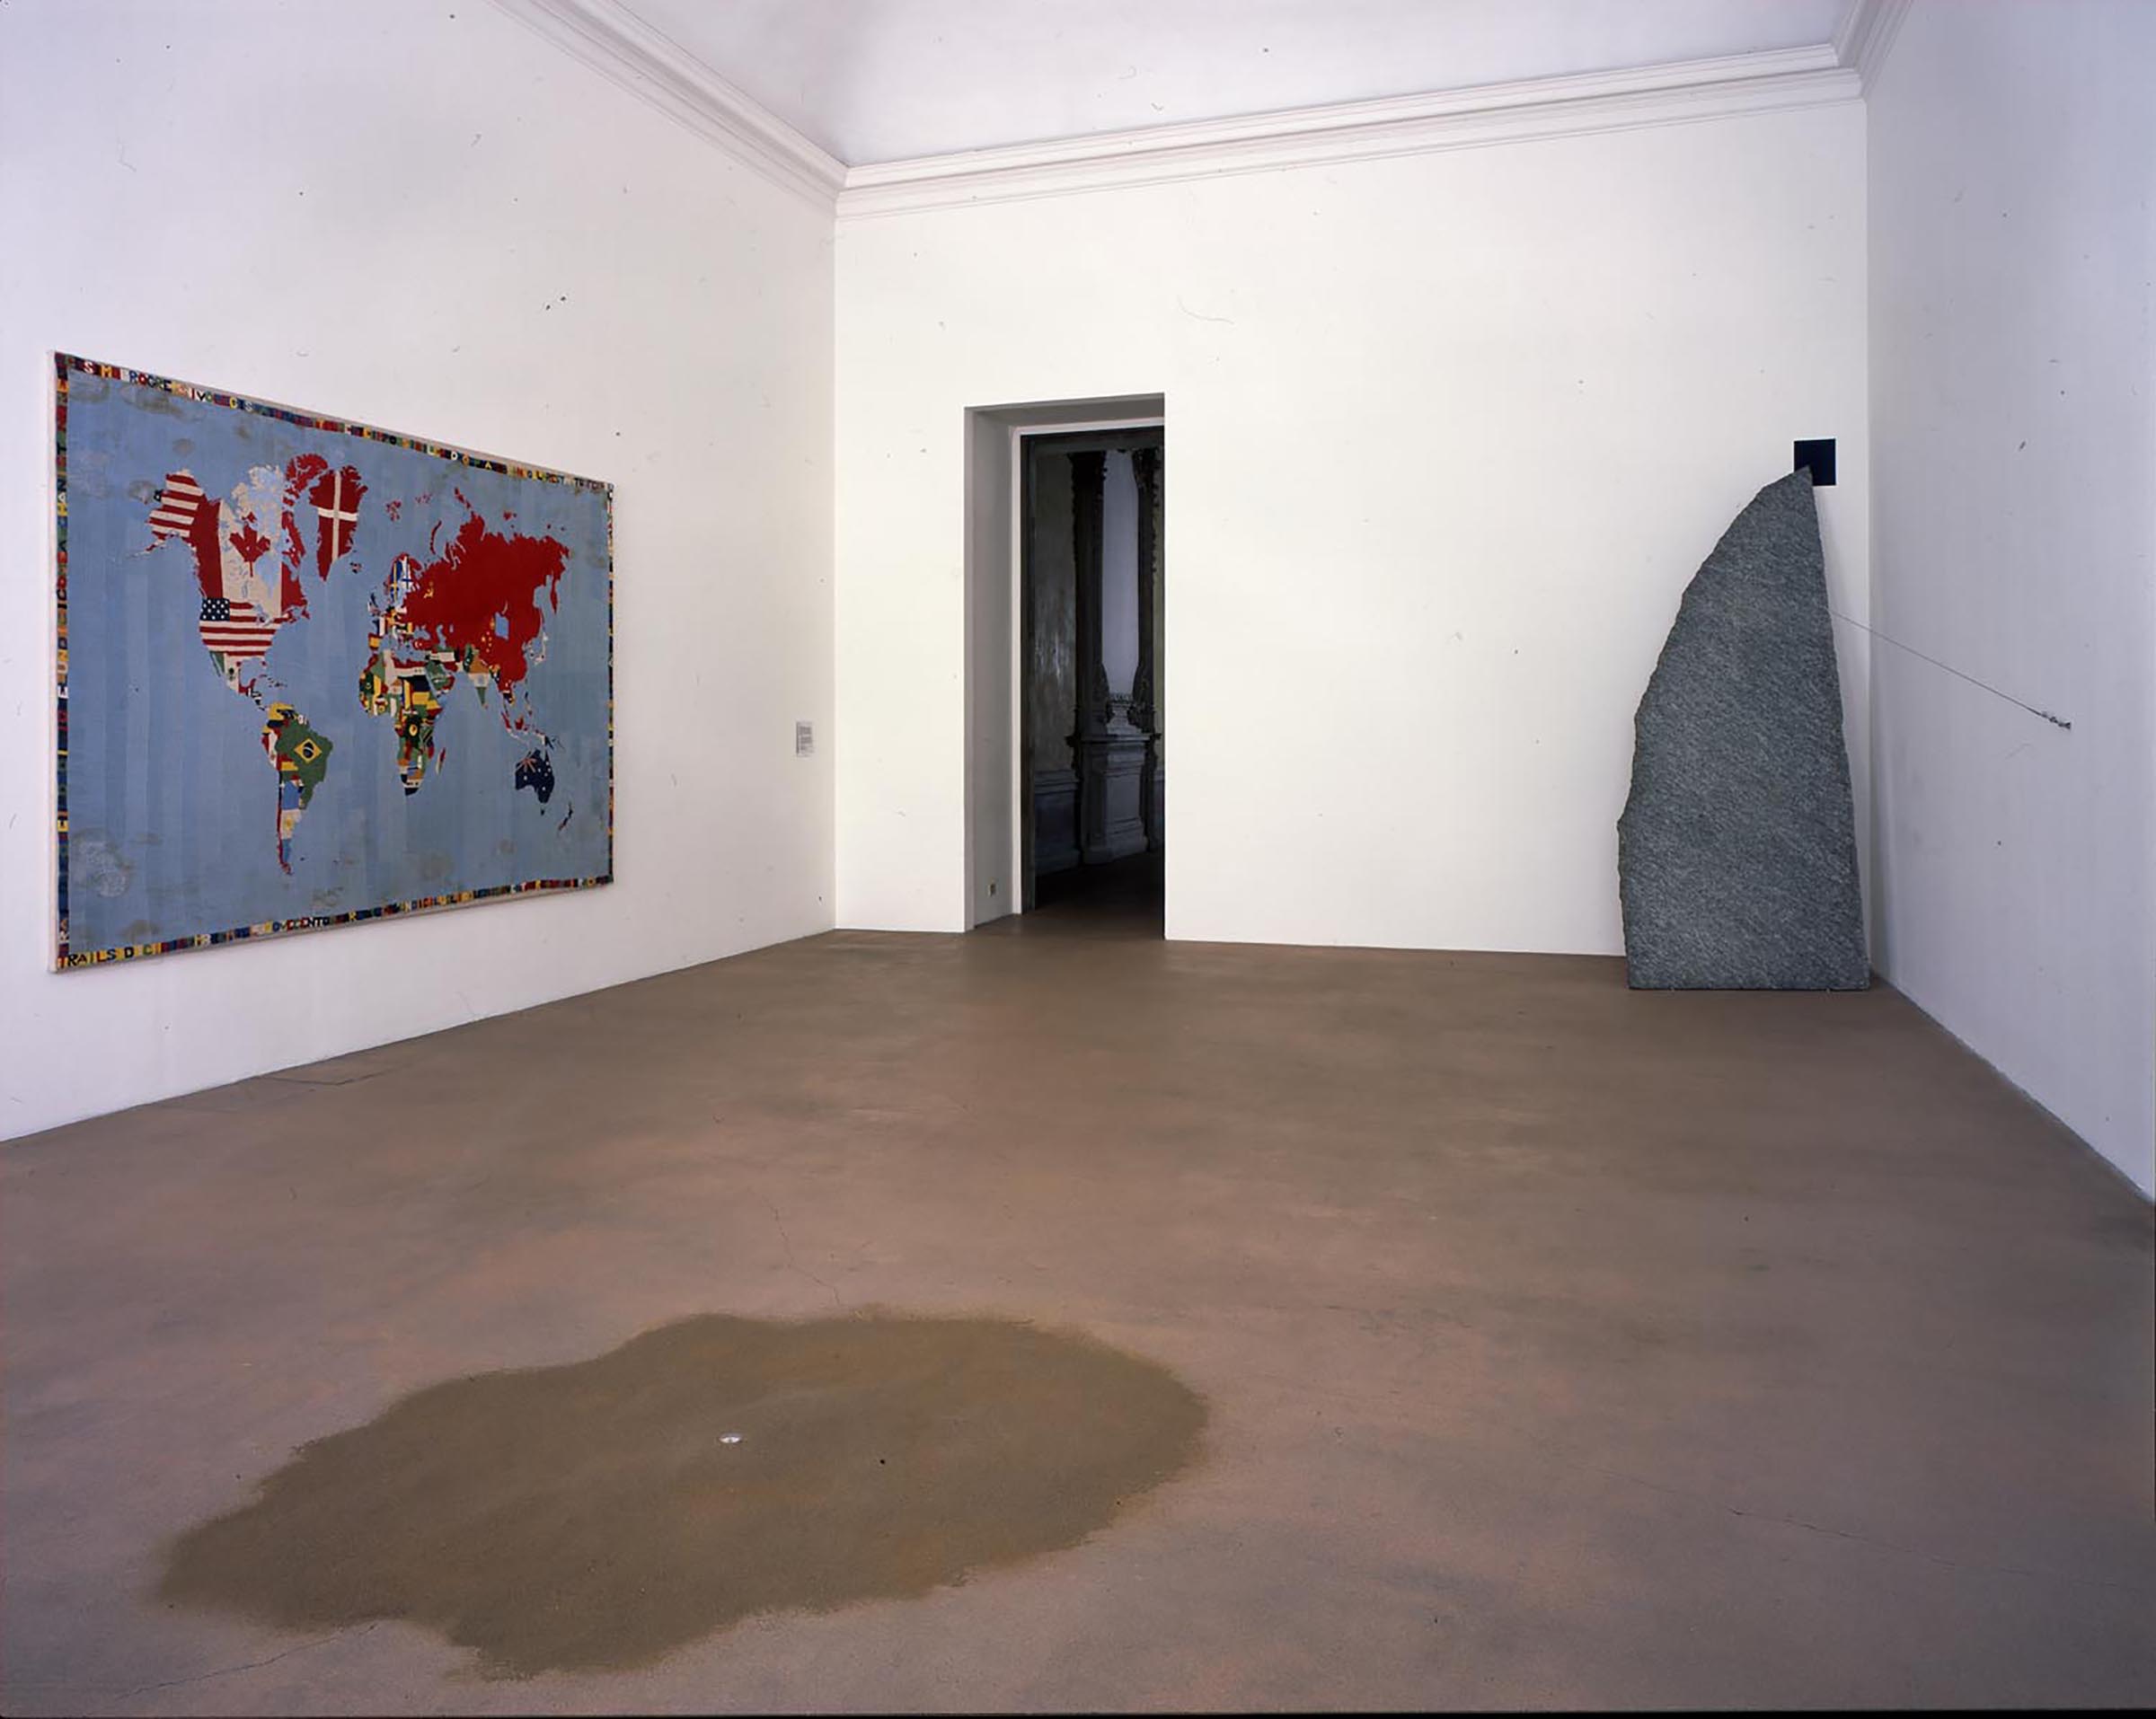 Alighiero Boetti, Mappa, 1971-73; Giovanni Anselmo, Mentre la terra si orienta, 1967-2007, Verso oltremare, 1984